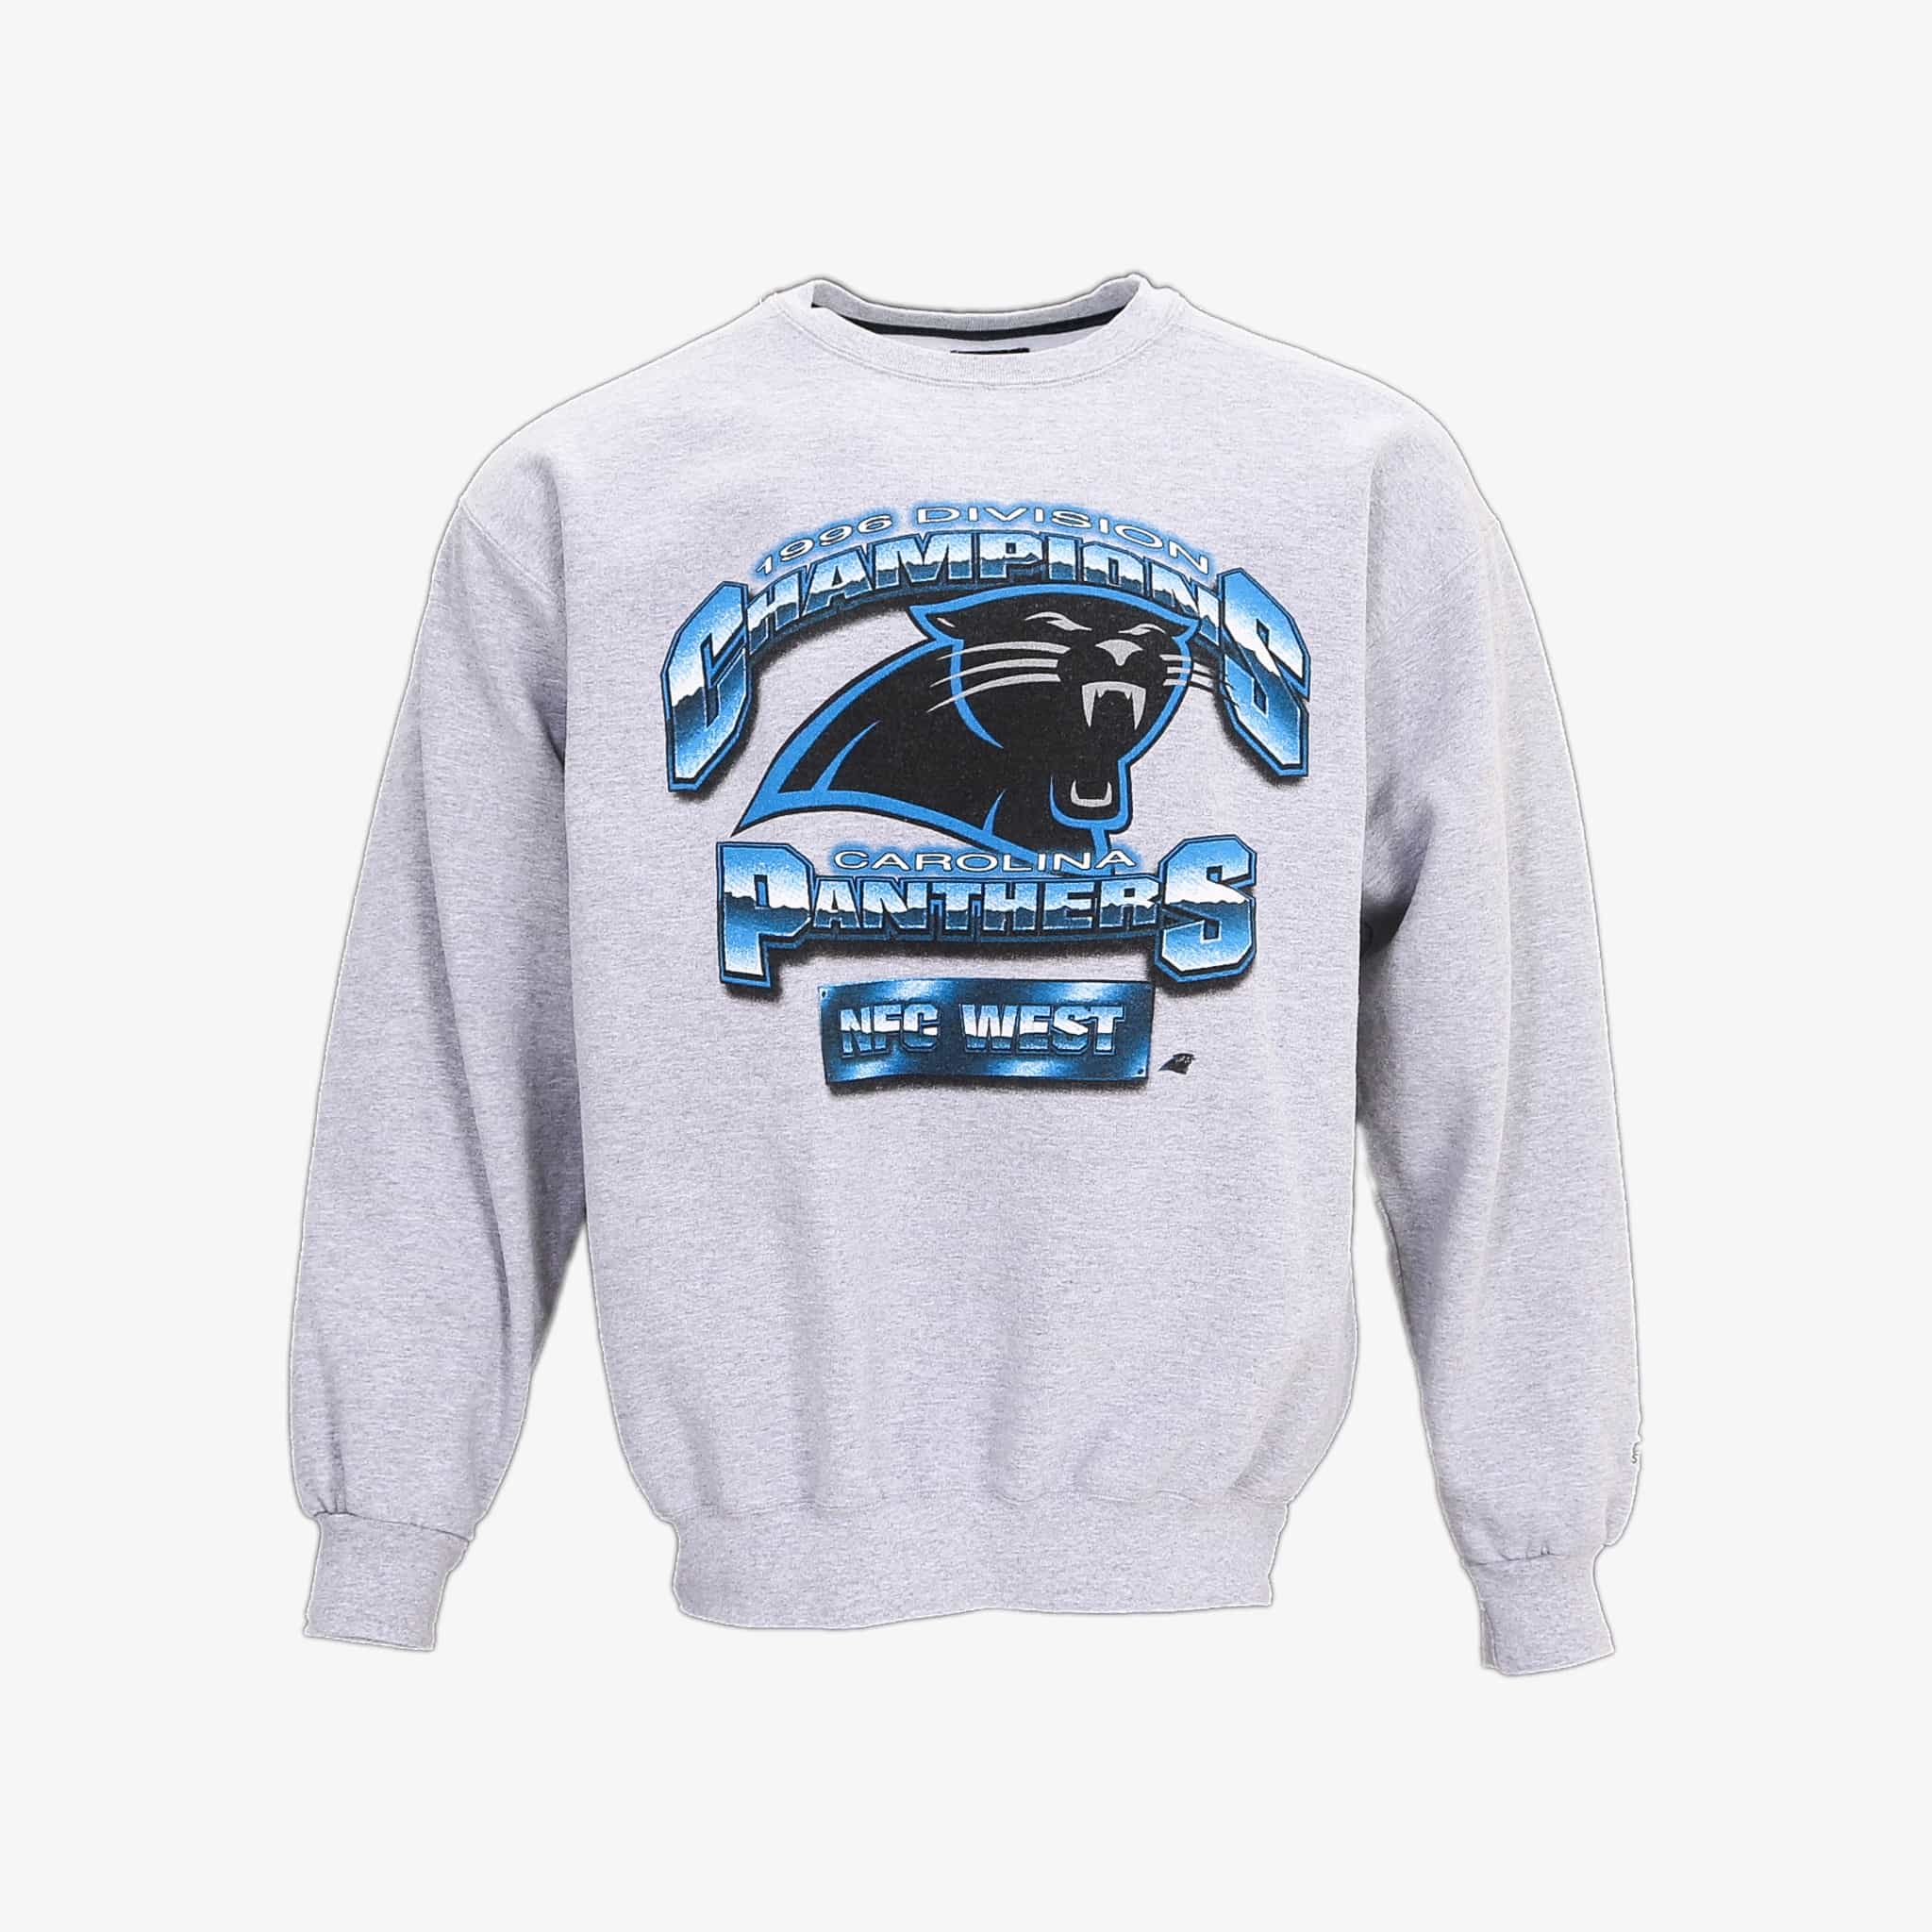 Panthers Champions 1996' Sweatshirt